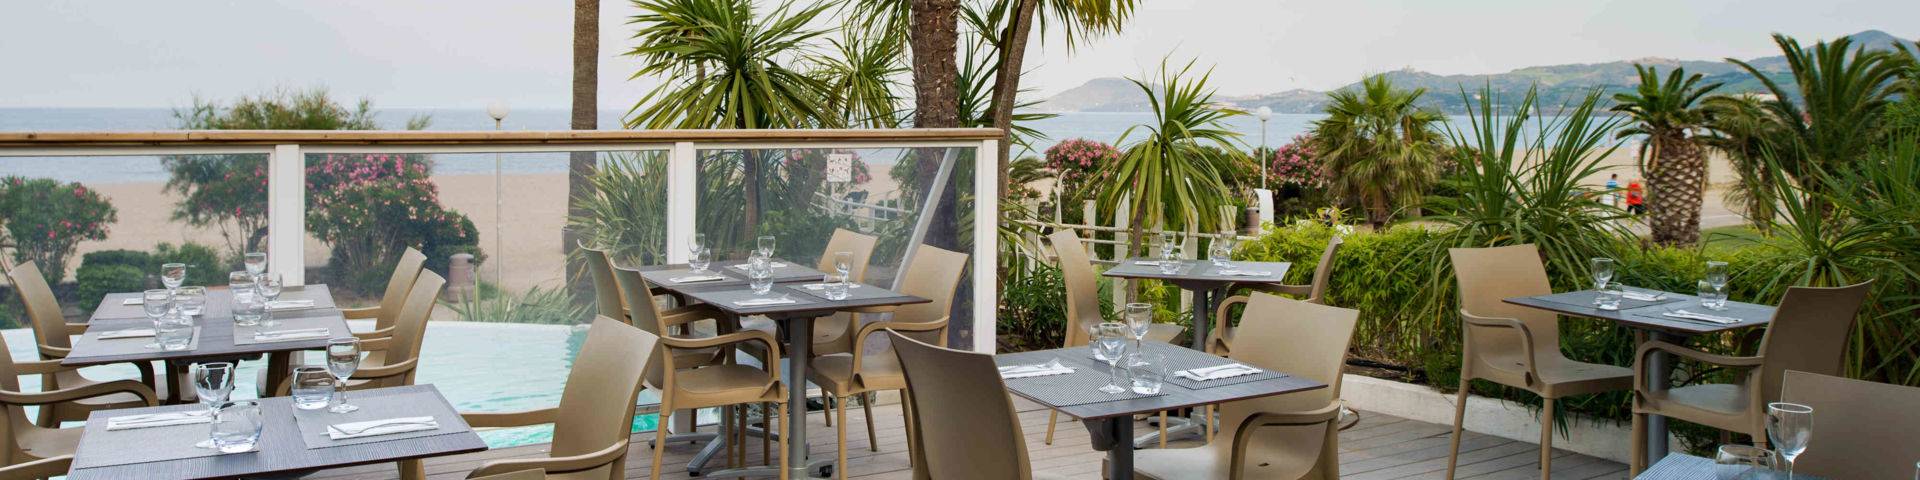 Restaurant terrasse Comptoir JOA Argelès